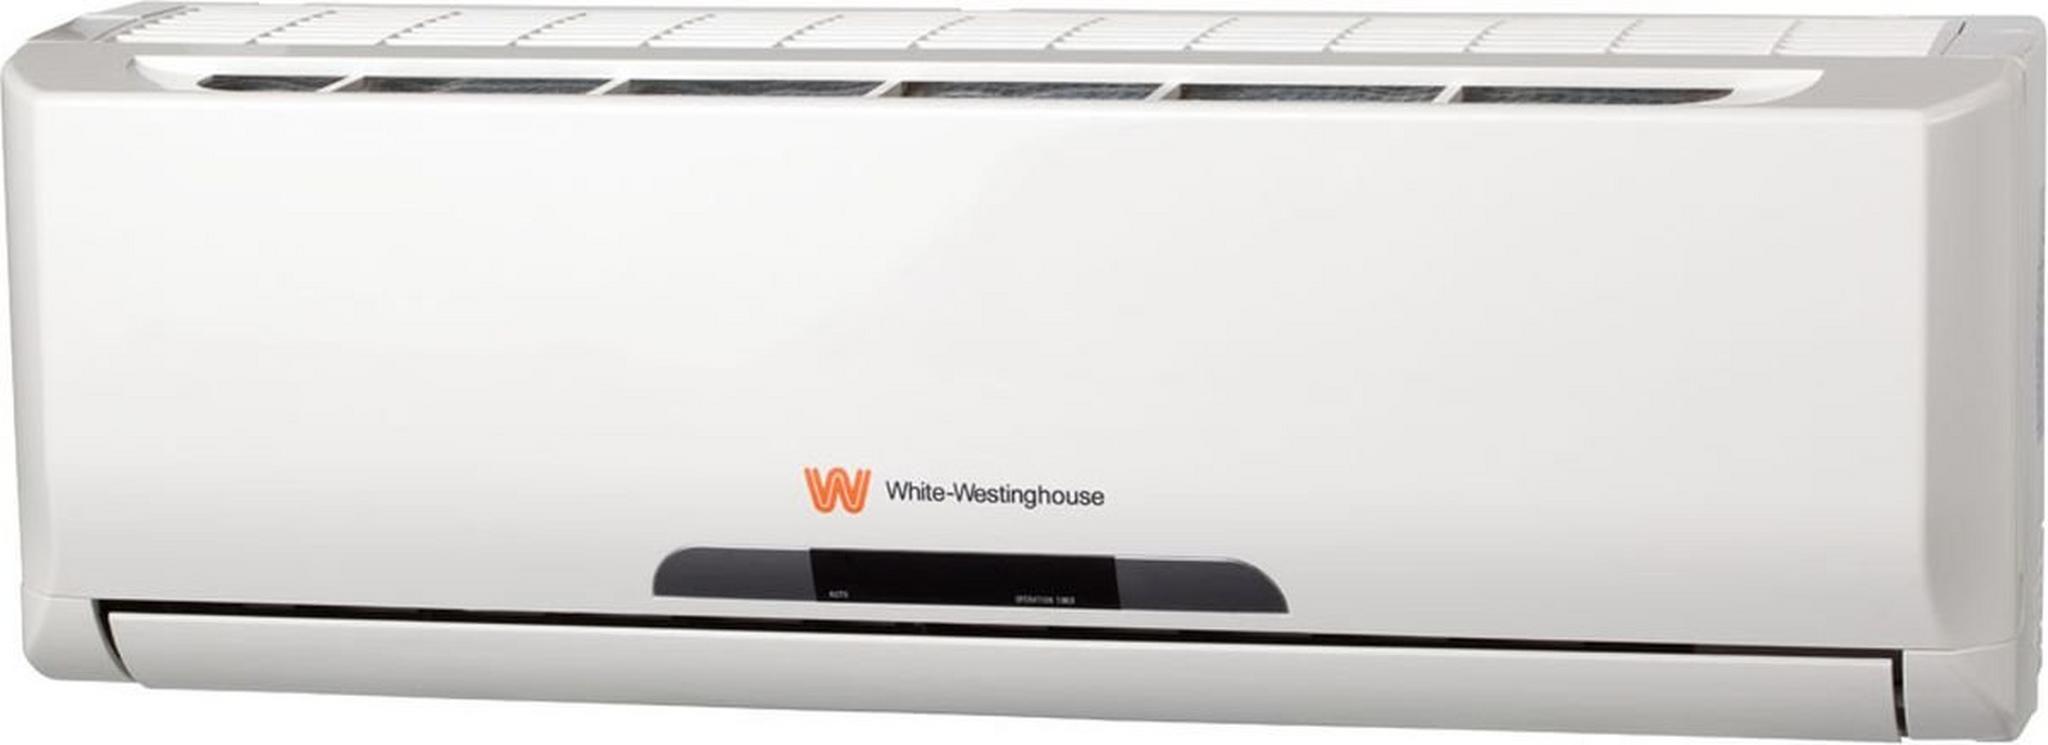 White Westinghouse 18,000BTU Cooling Operation Split AC (WWS18G7I/C)